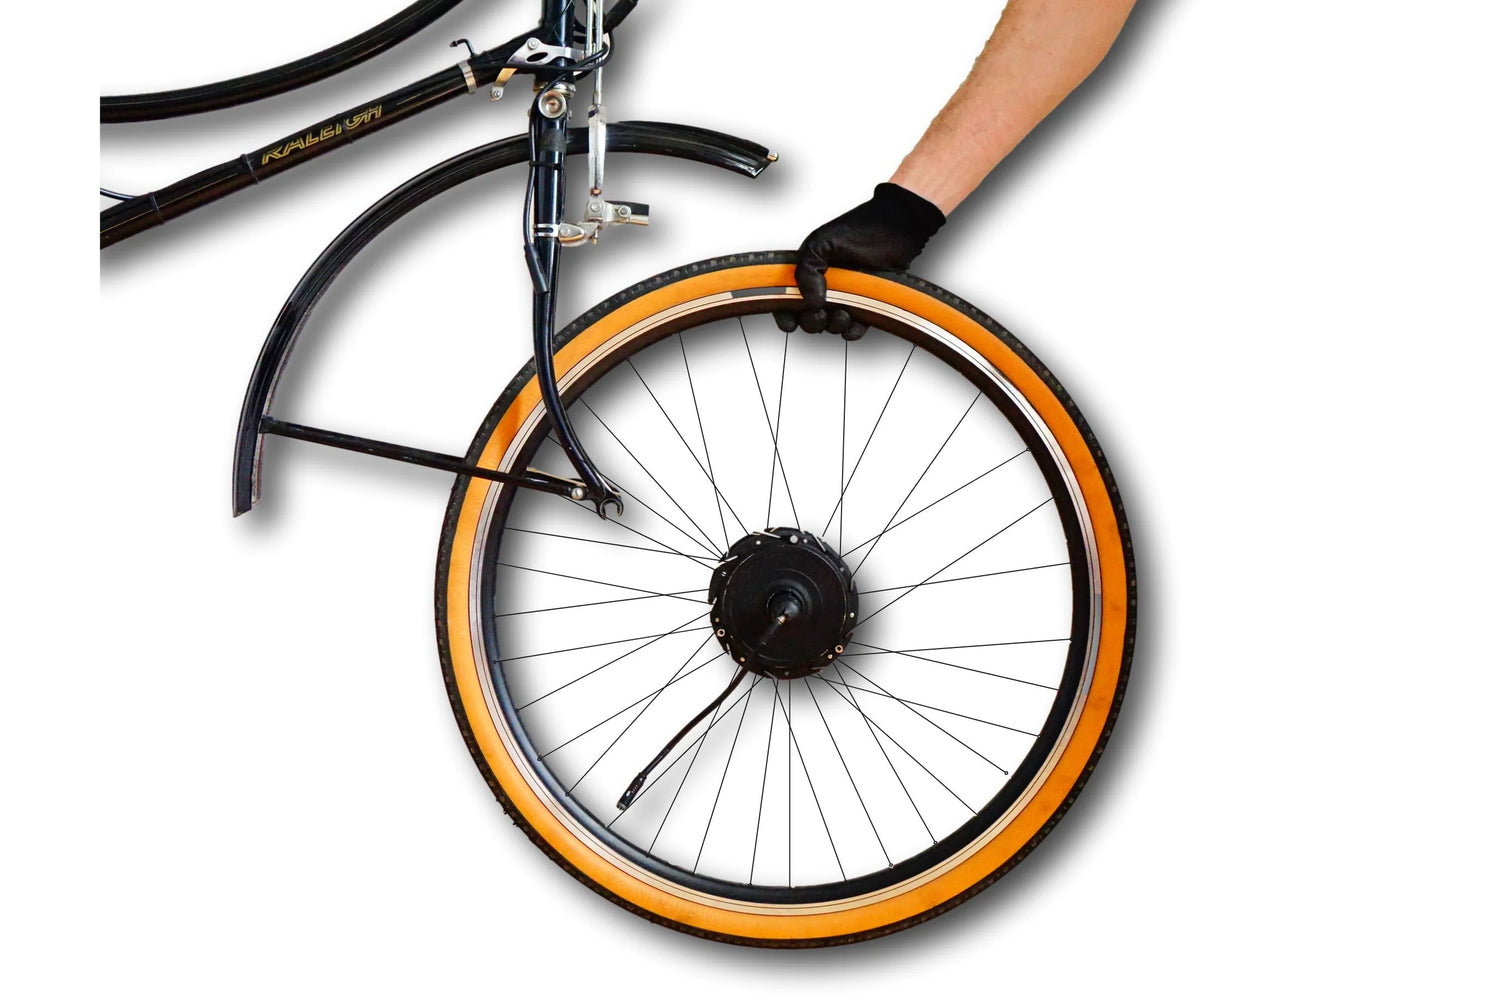 Lightest, un kit de vélo électrique à 499 euros qui promet à la fois  légèreté et polyvalence - NeozOne